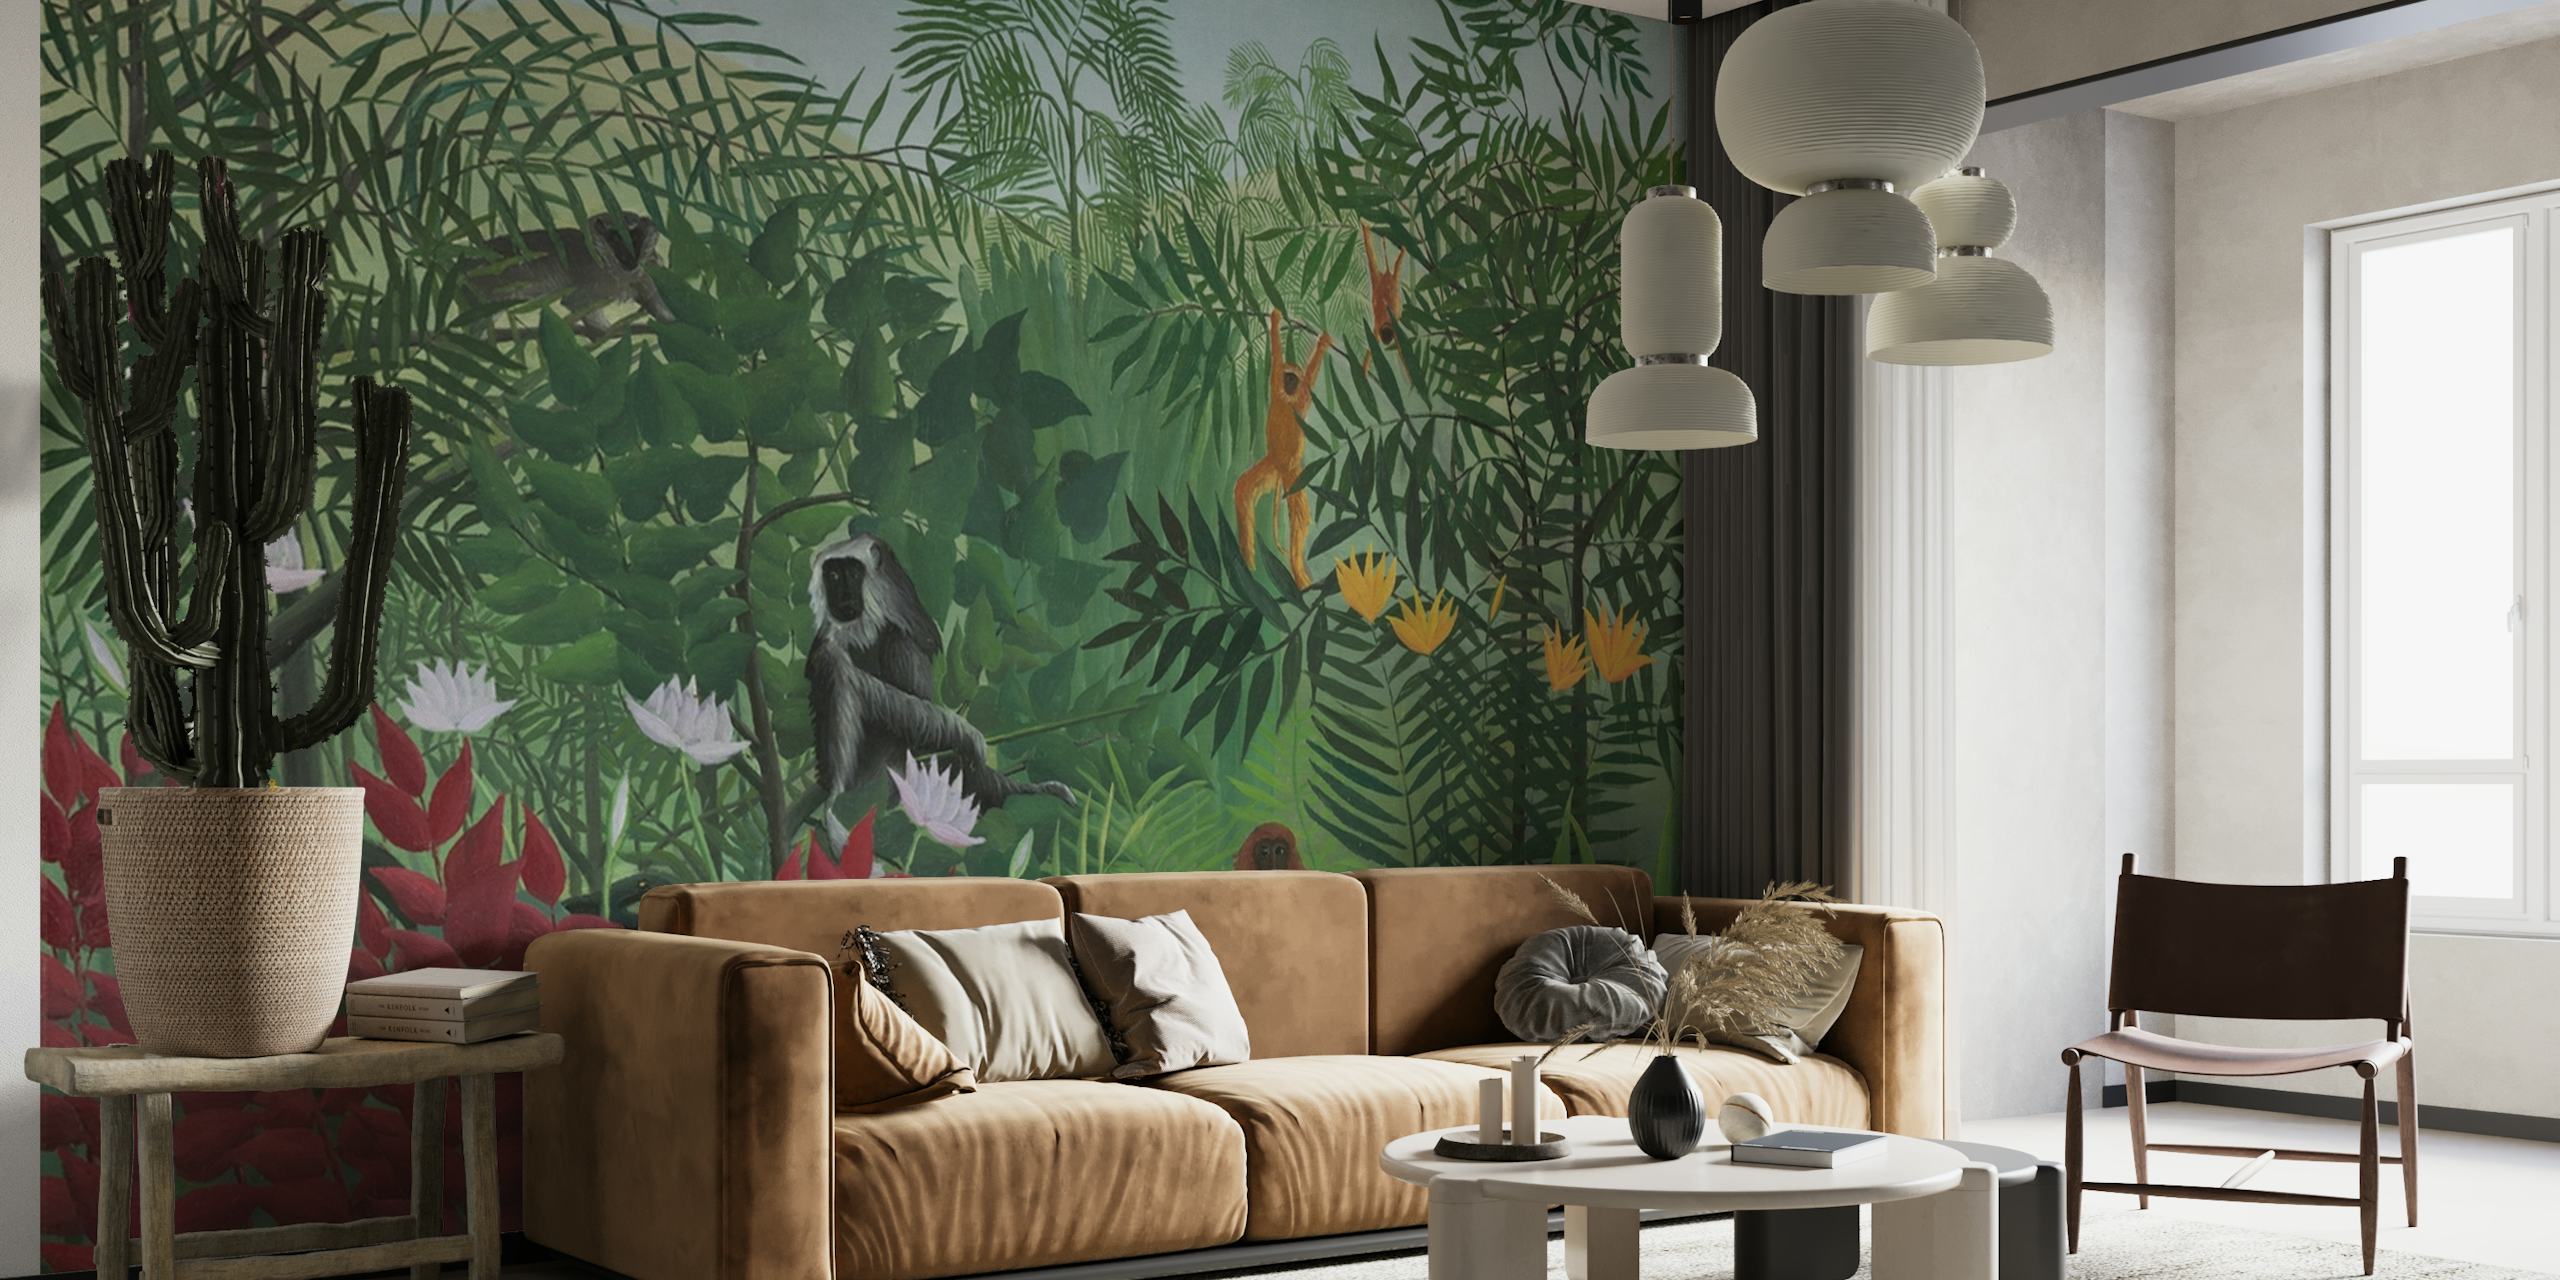 Fototapeta zobrazující scénu tropického pralesa s opicemi, inspirovaná uměleckým stylem Henriho Rousseaua.